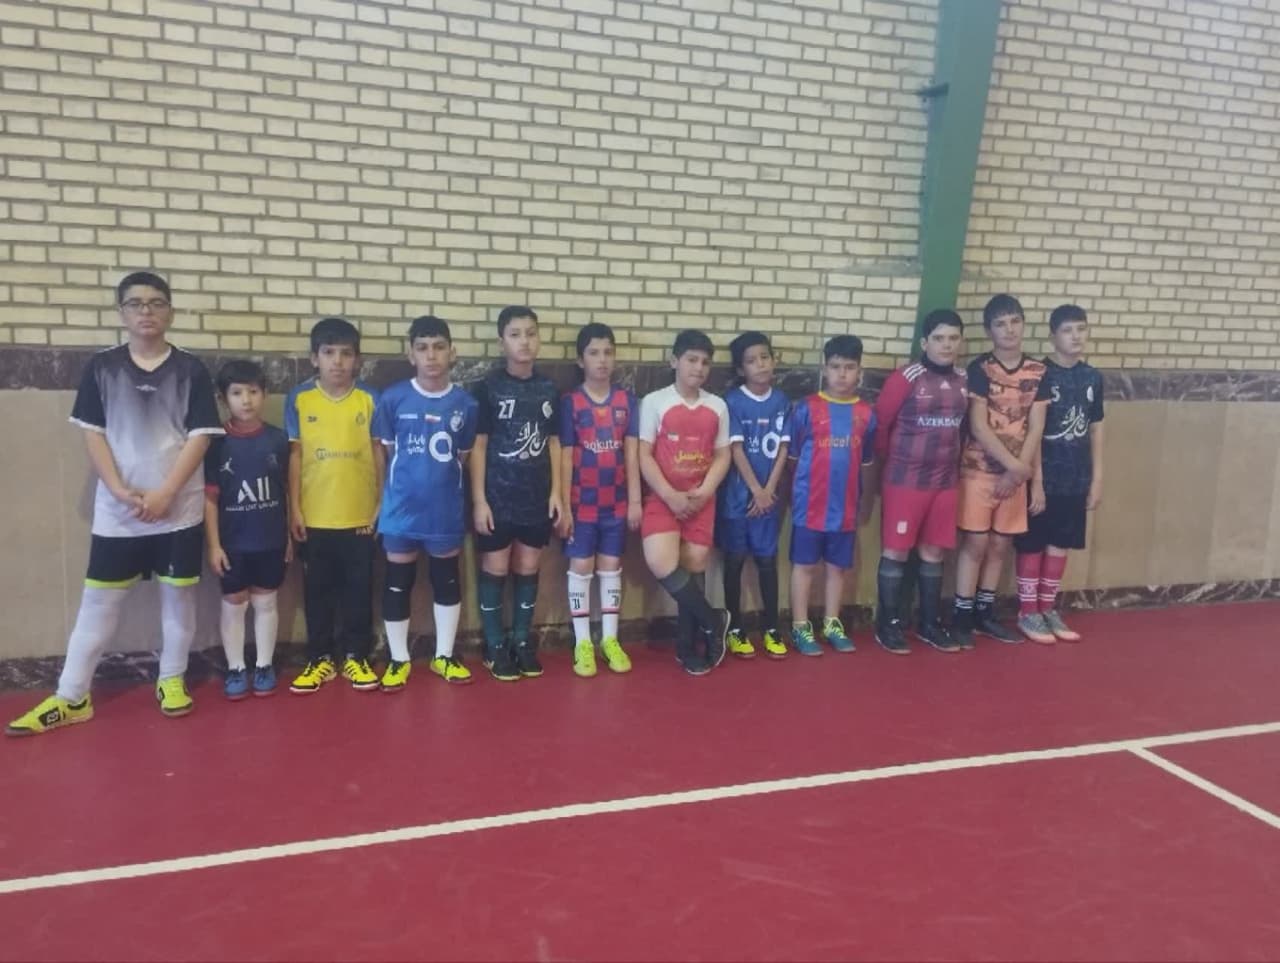 وقت سالن ورزشی برای بچه های مسجد